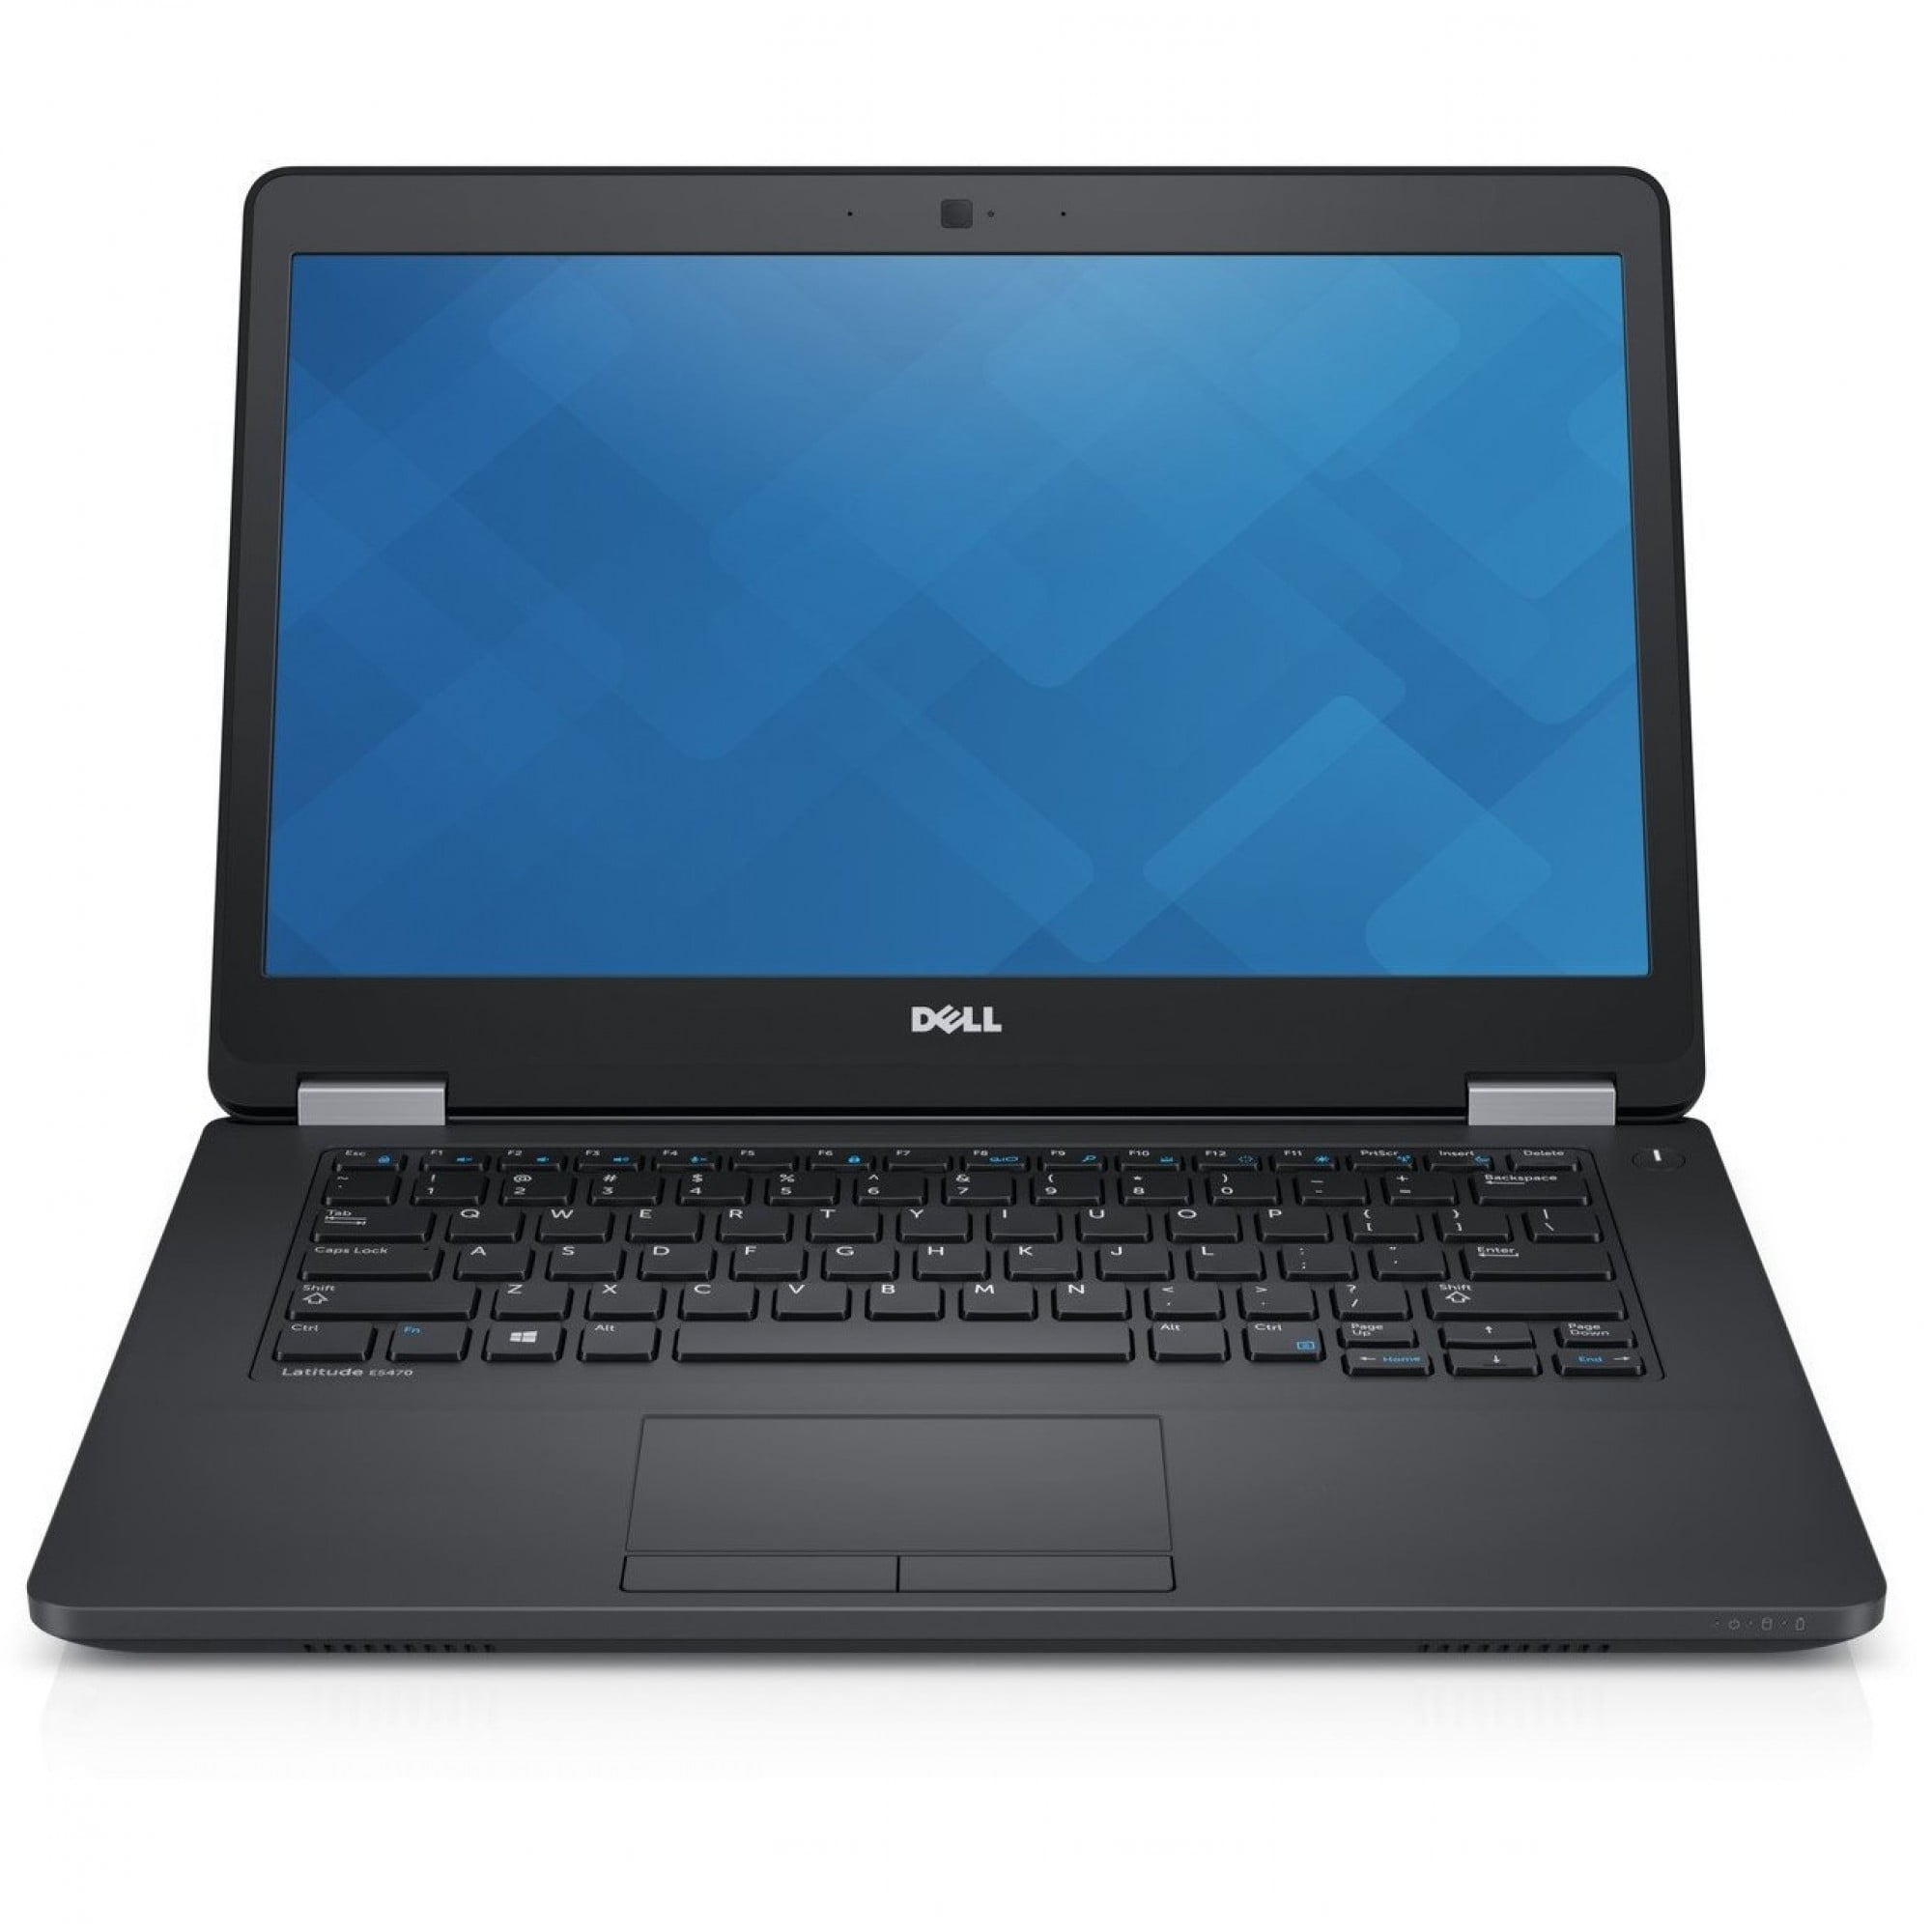 Dell Latitude E5550 Laptop Computer, 2.90 GHz Intel i7 Dual Core Gen 5